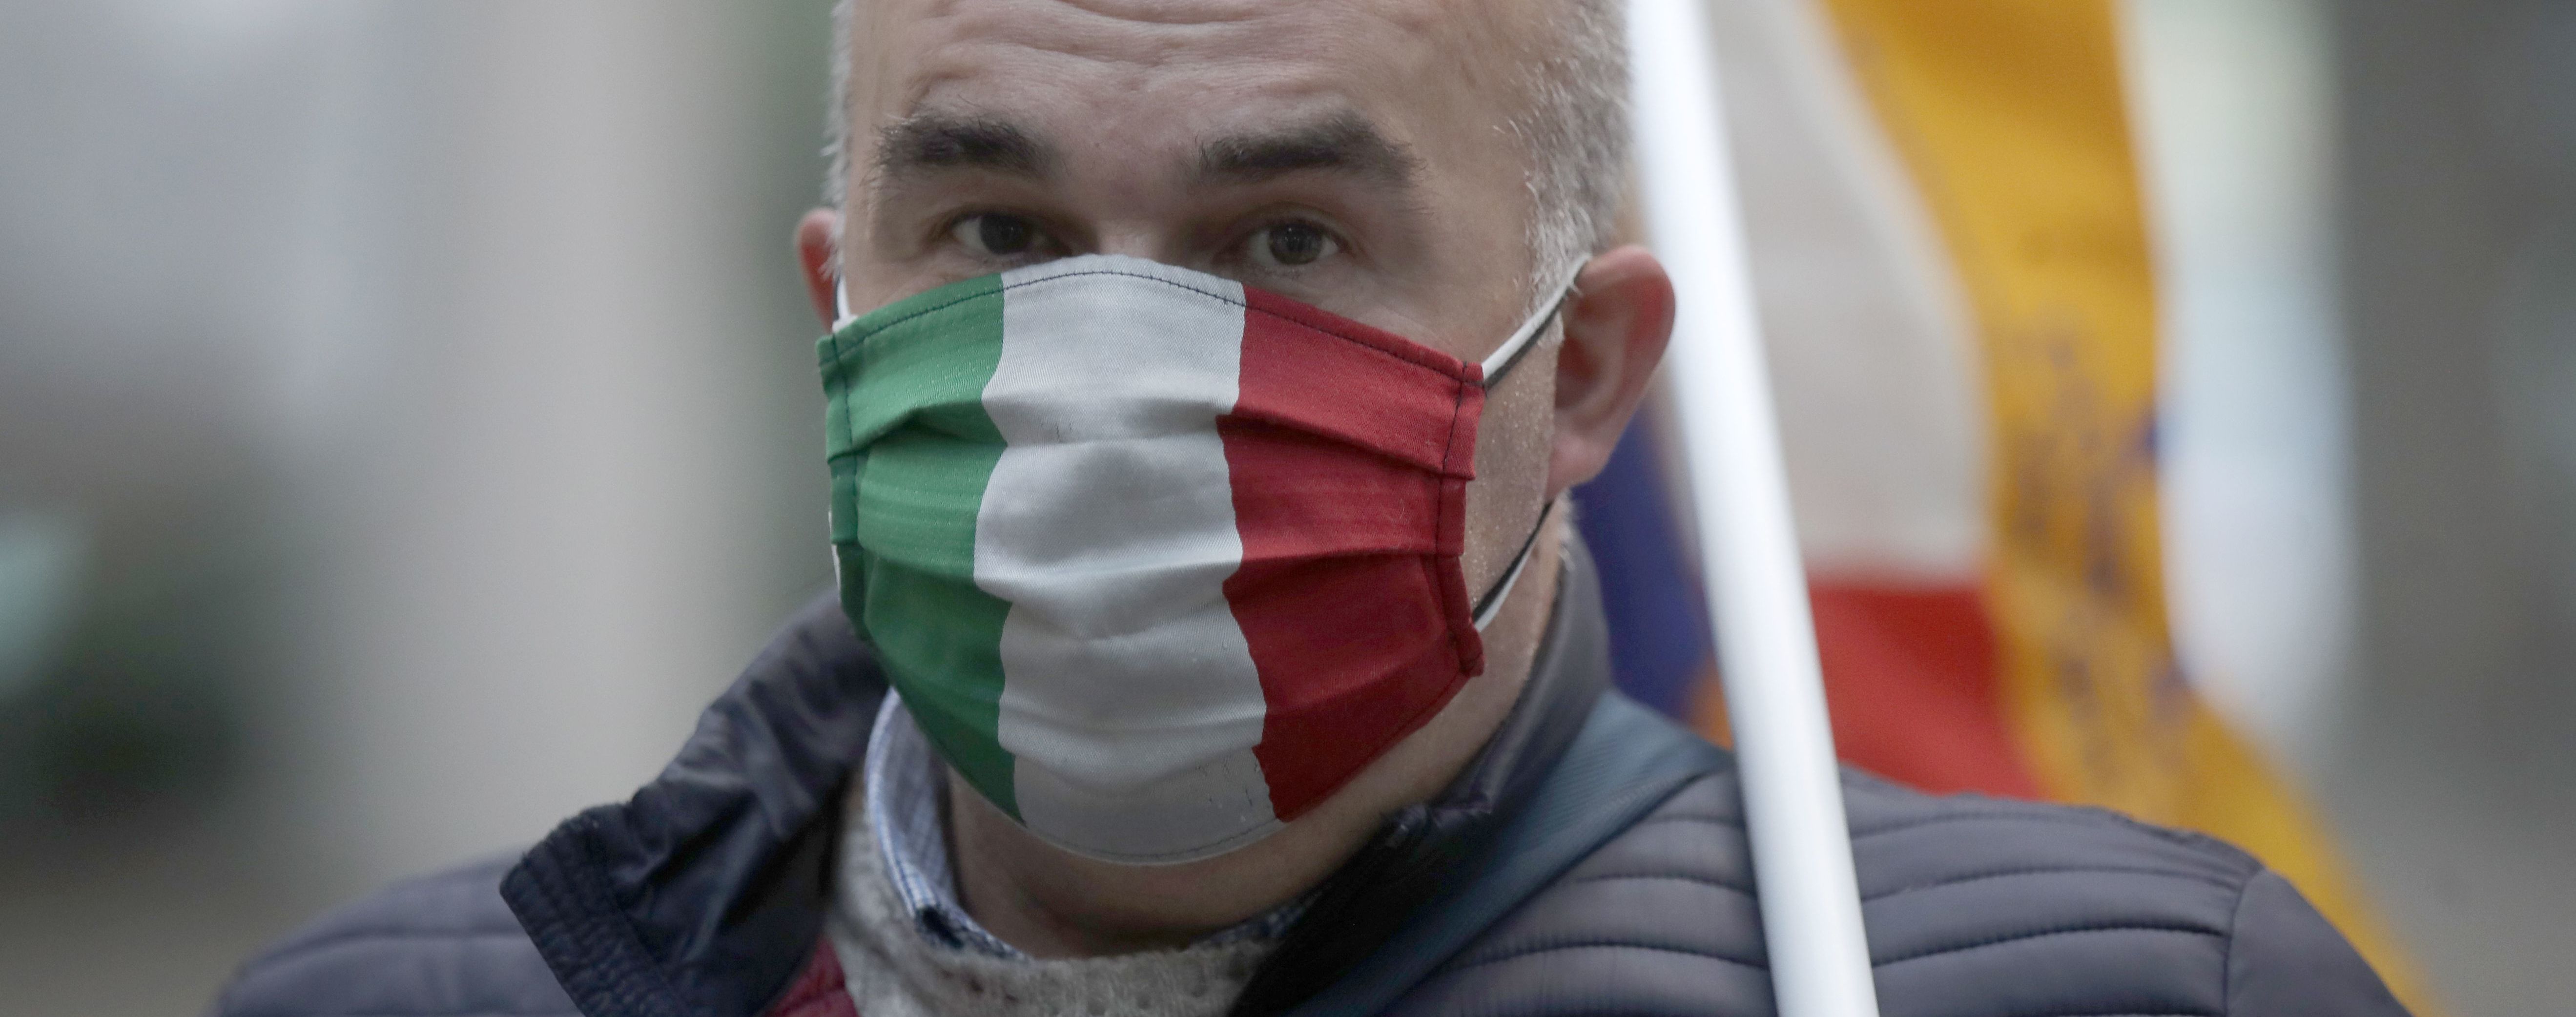 Протесты против COVID-паспортов: в Италии жестоко разогнали митингующих